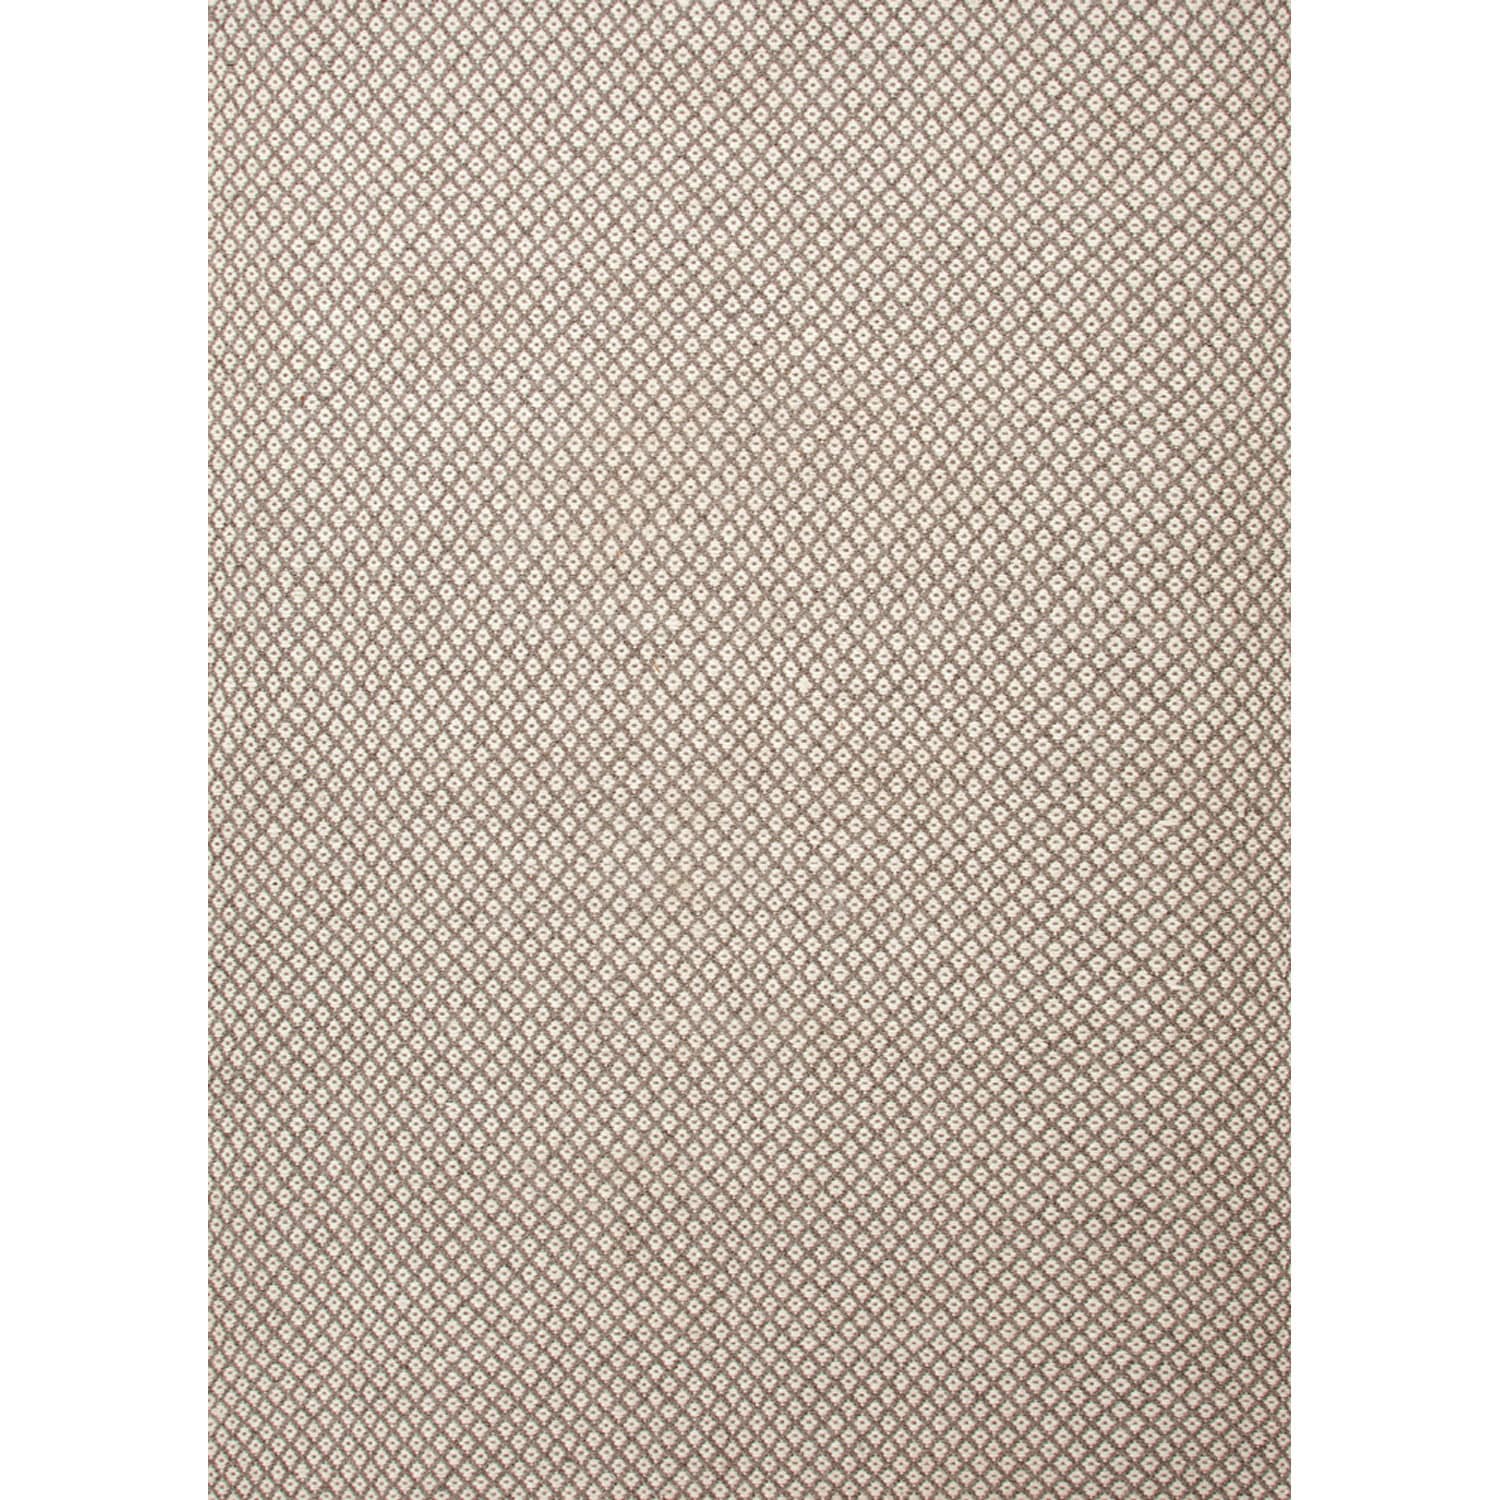 Handmade Flat Weave Solid Pattern Brown Rug (8 X 10)